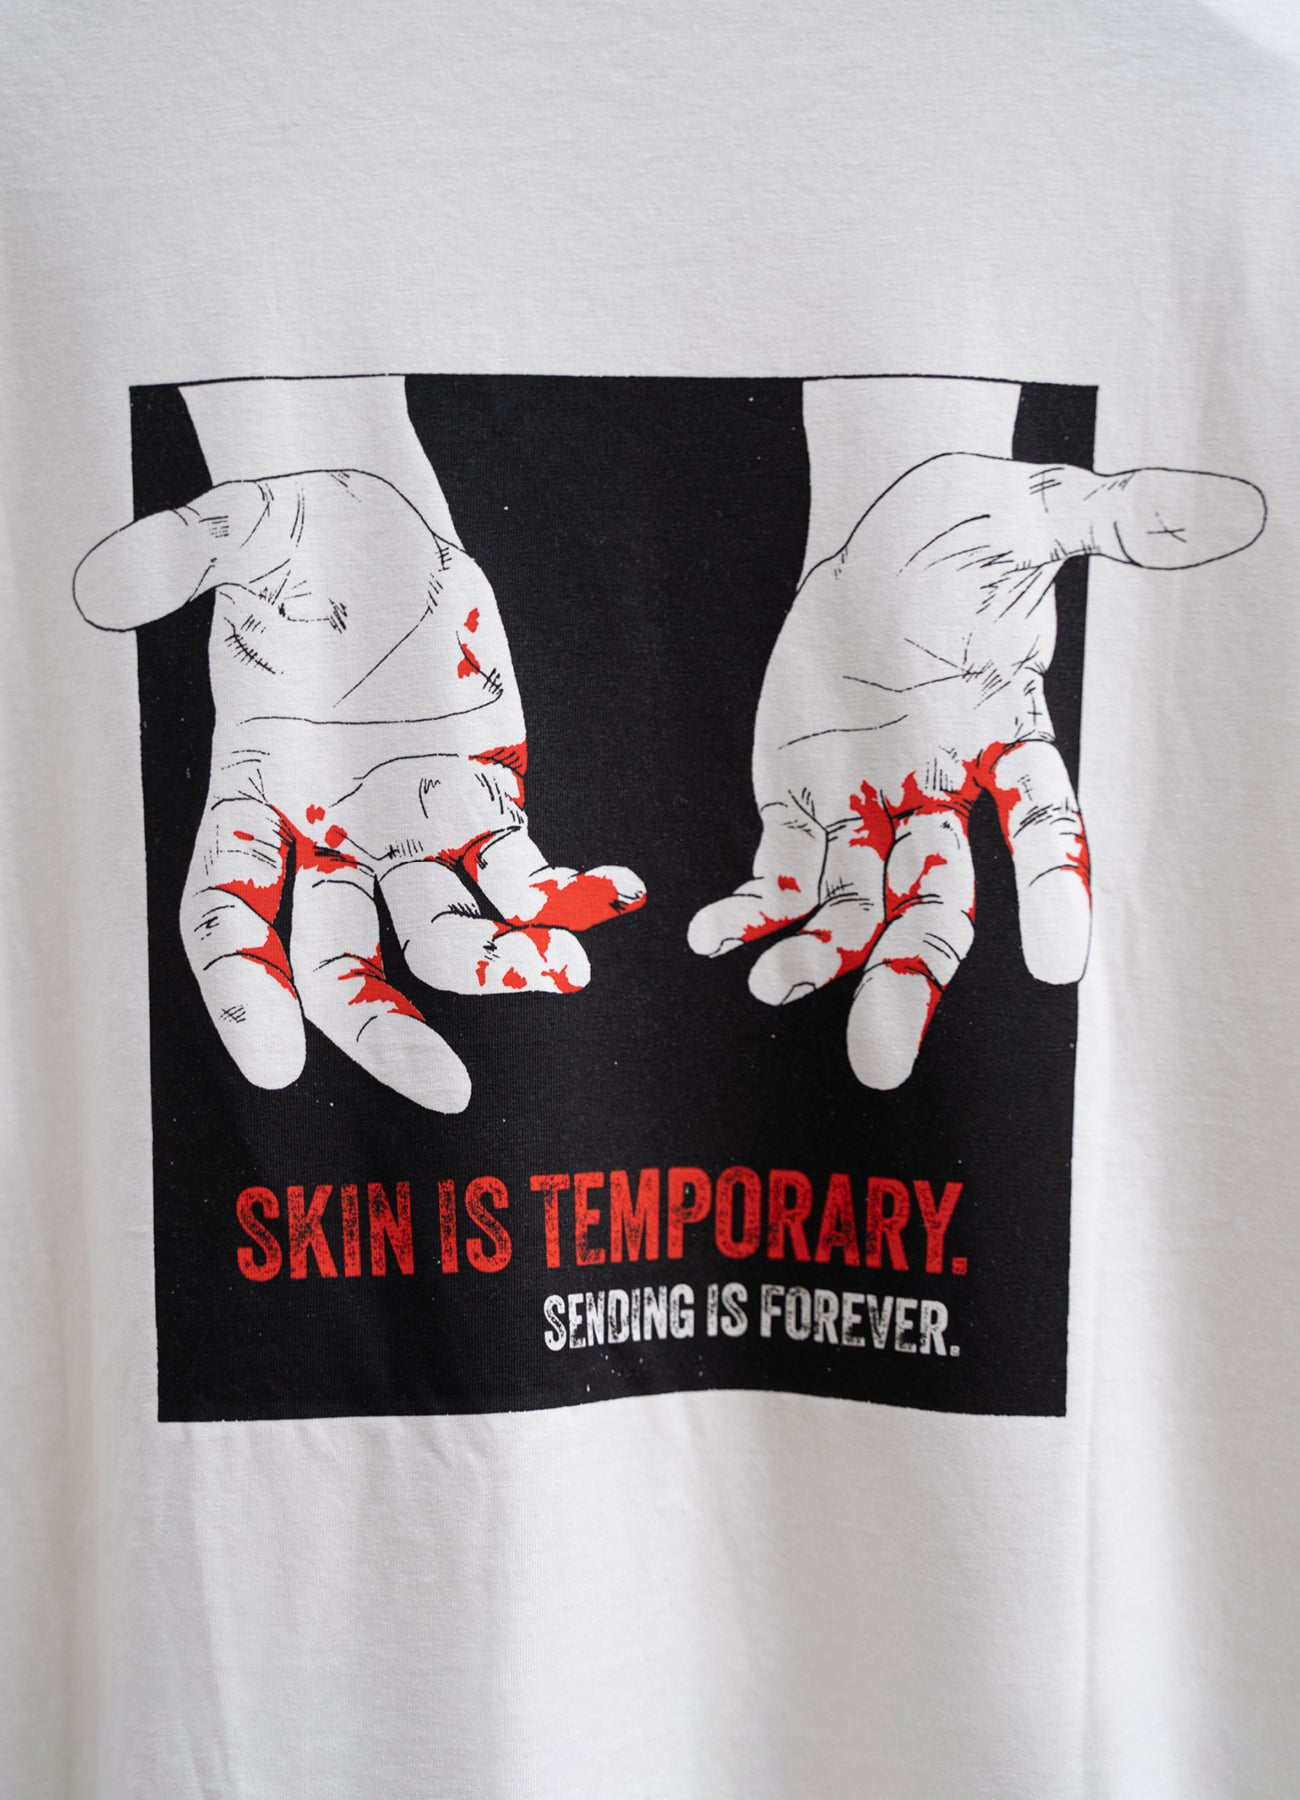 Skin is temporary. Sending is forever.